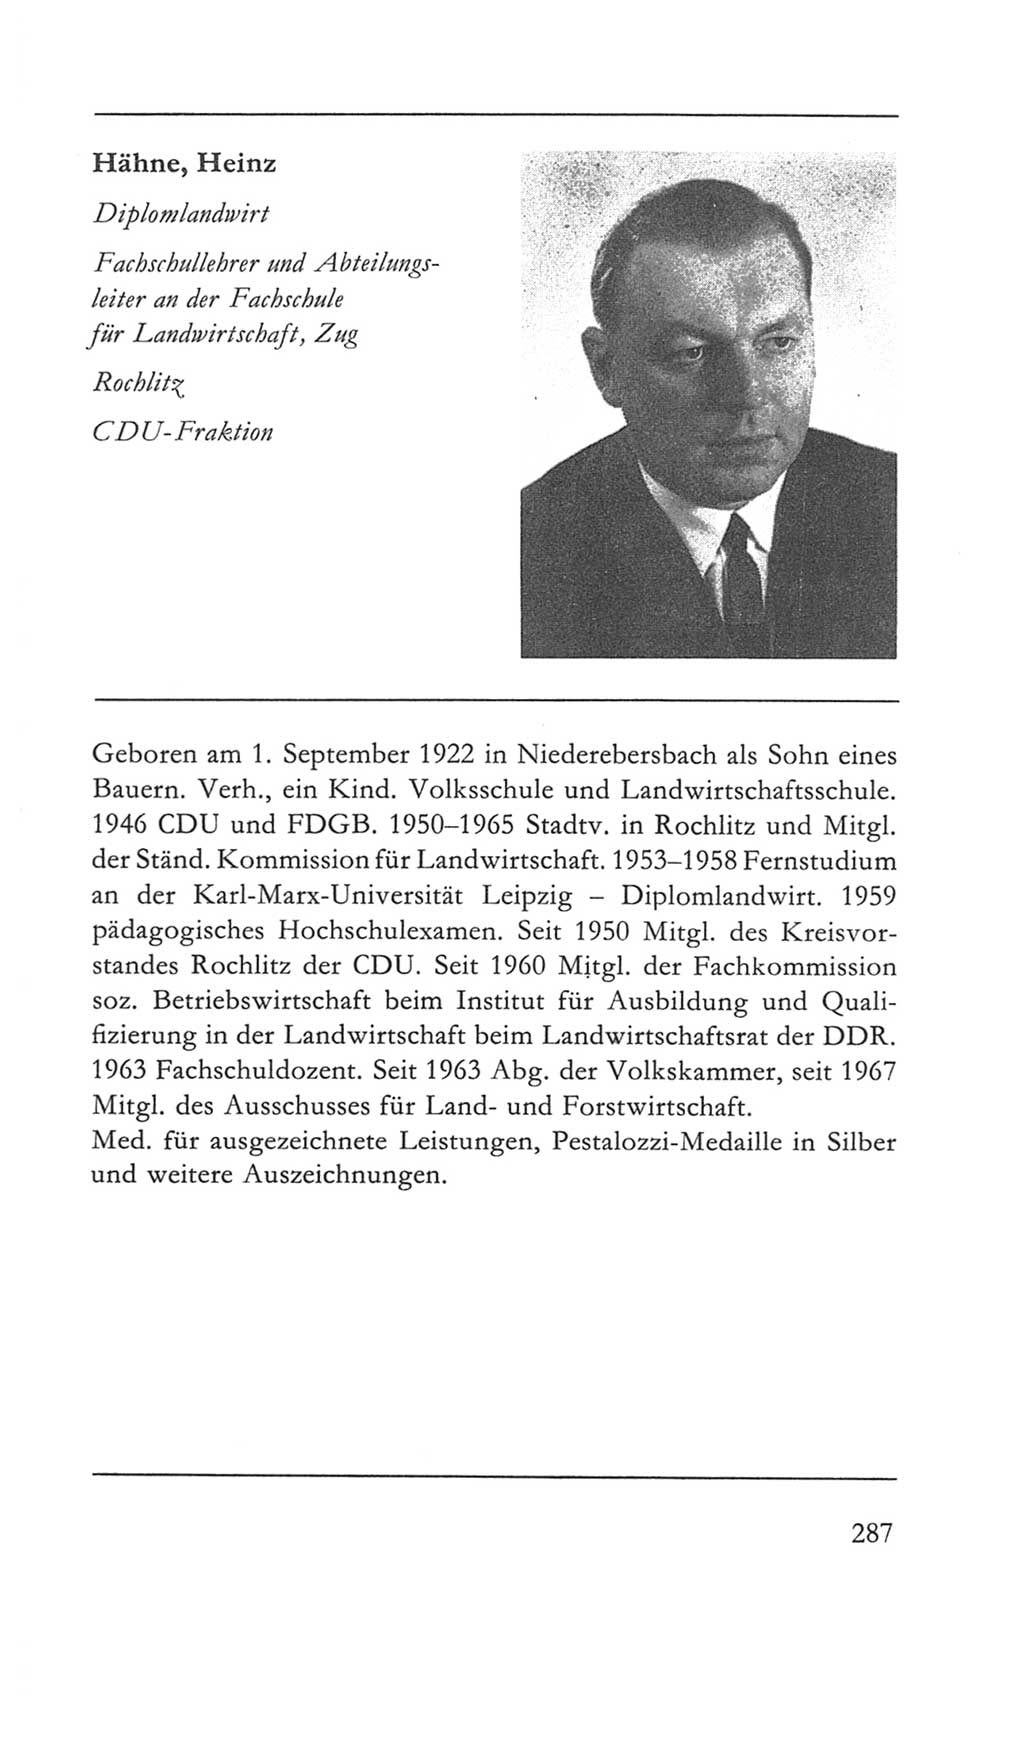 Volkskammer (VK) der Deutschen Demokratischen Republik (DDR) 5. Wahlperiode 1967-1971, Seite 287 (VK. DDR 5. WP. 1967-1971, S. 287)